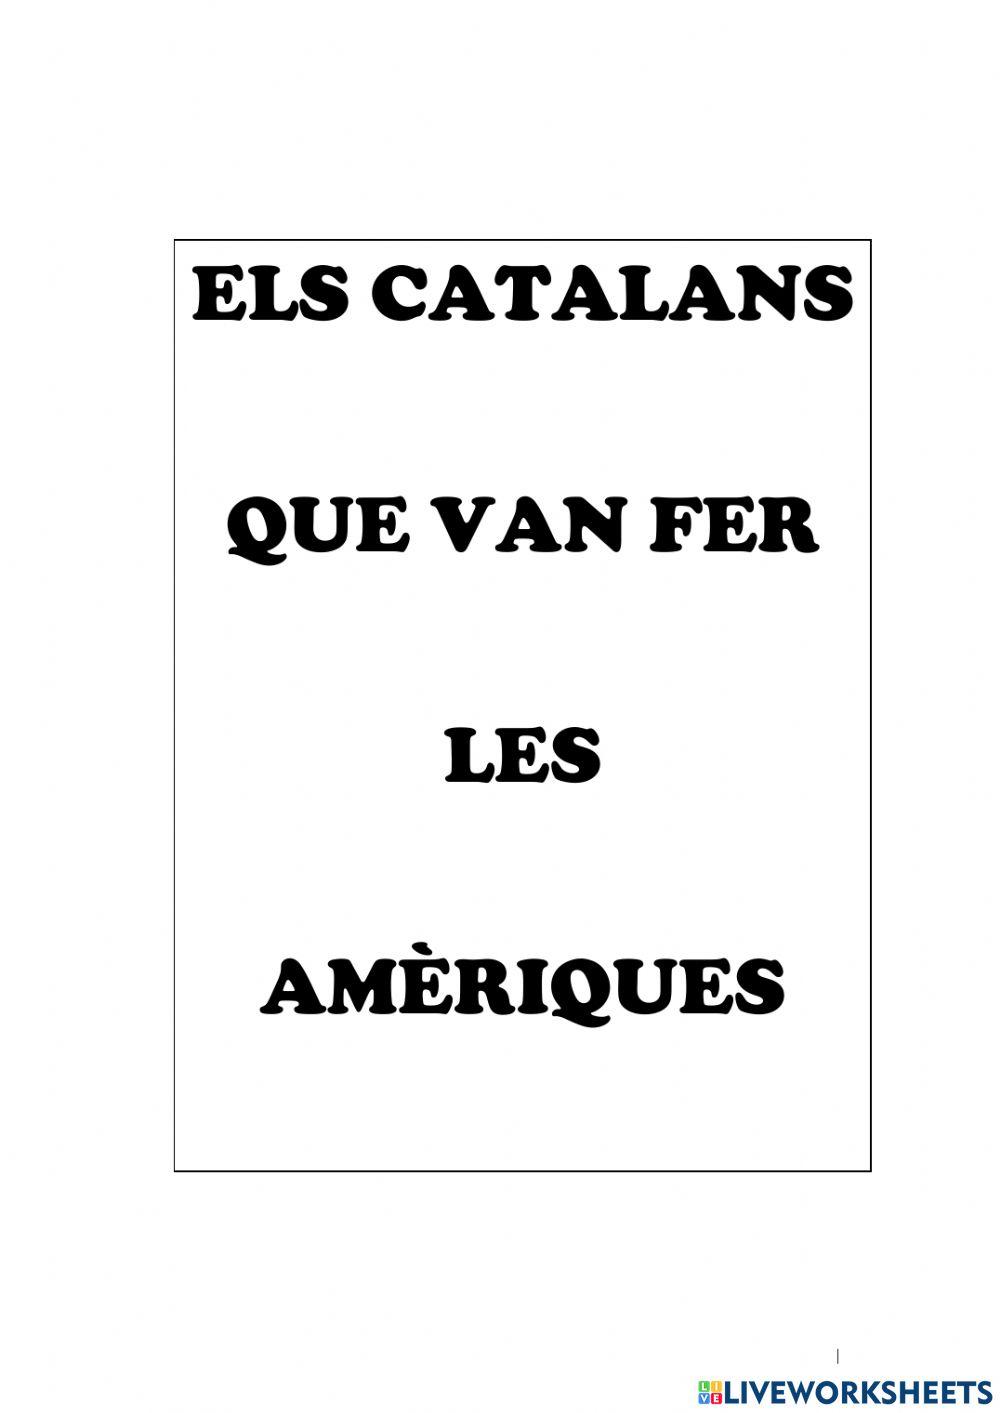 Els catalans que volien fer les amèriques